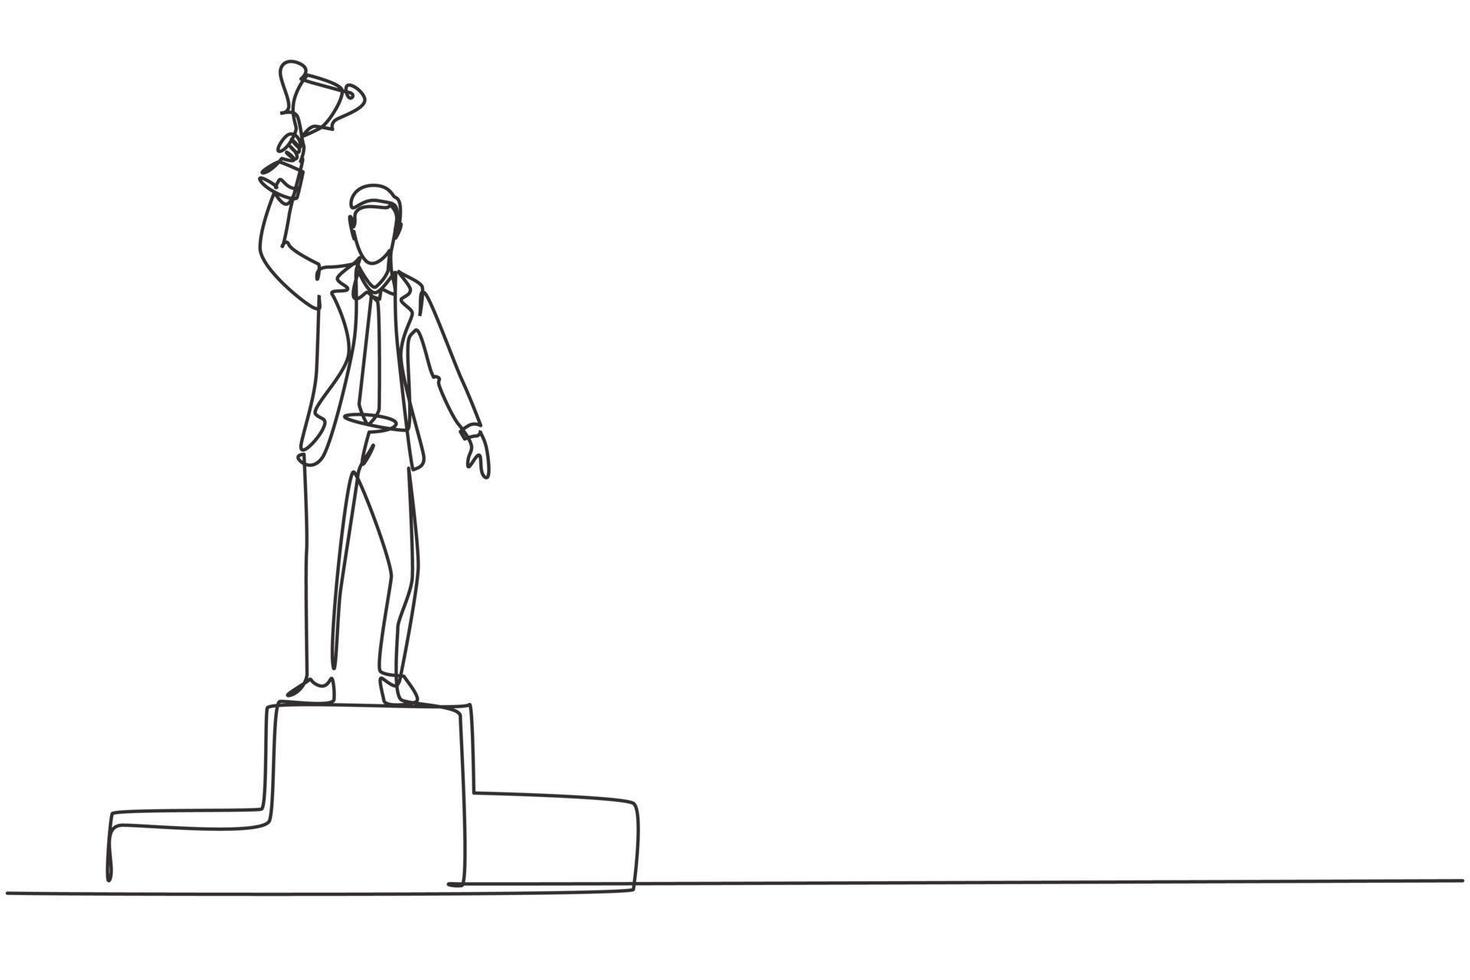 Single One-Line-Zeichnung junger Geschäftsmann mit Anzug mit Krawatte, die goldene Trophäe mit einer Hand auf dem Podium hebt. Geschäftserfolg feiern. durchgehende Linie zeichnen Design-Grafik-Vektor-Illustration vektor